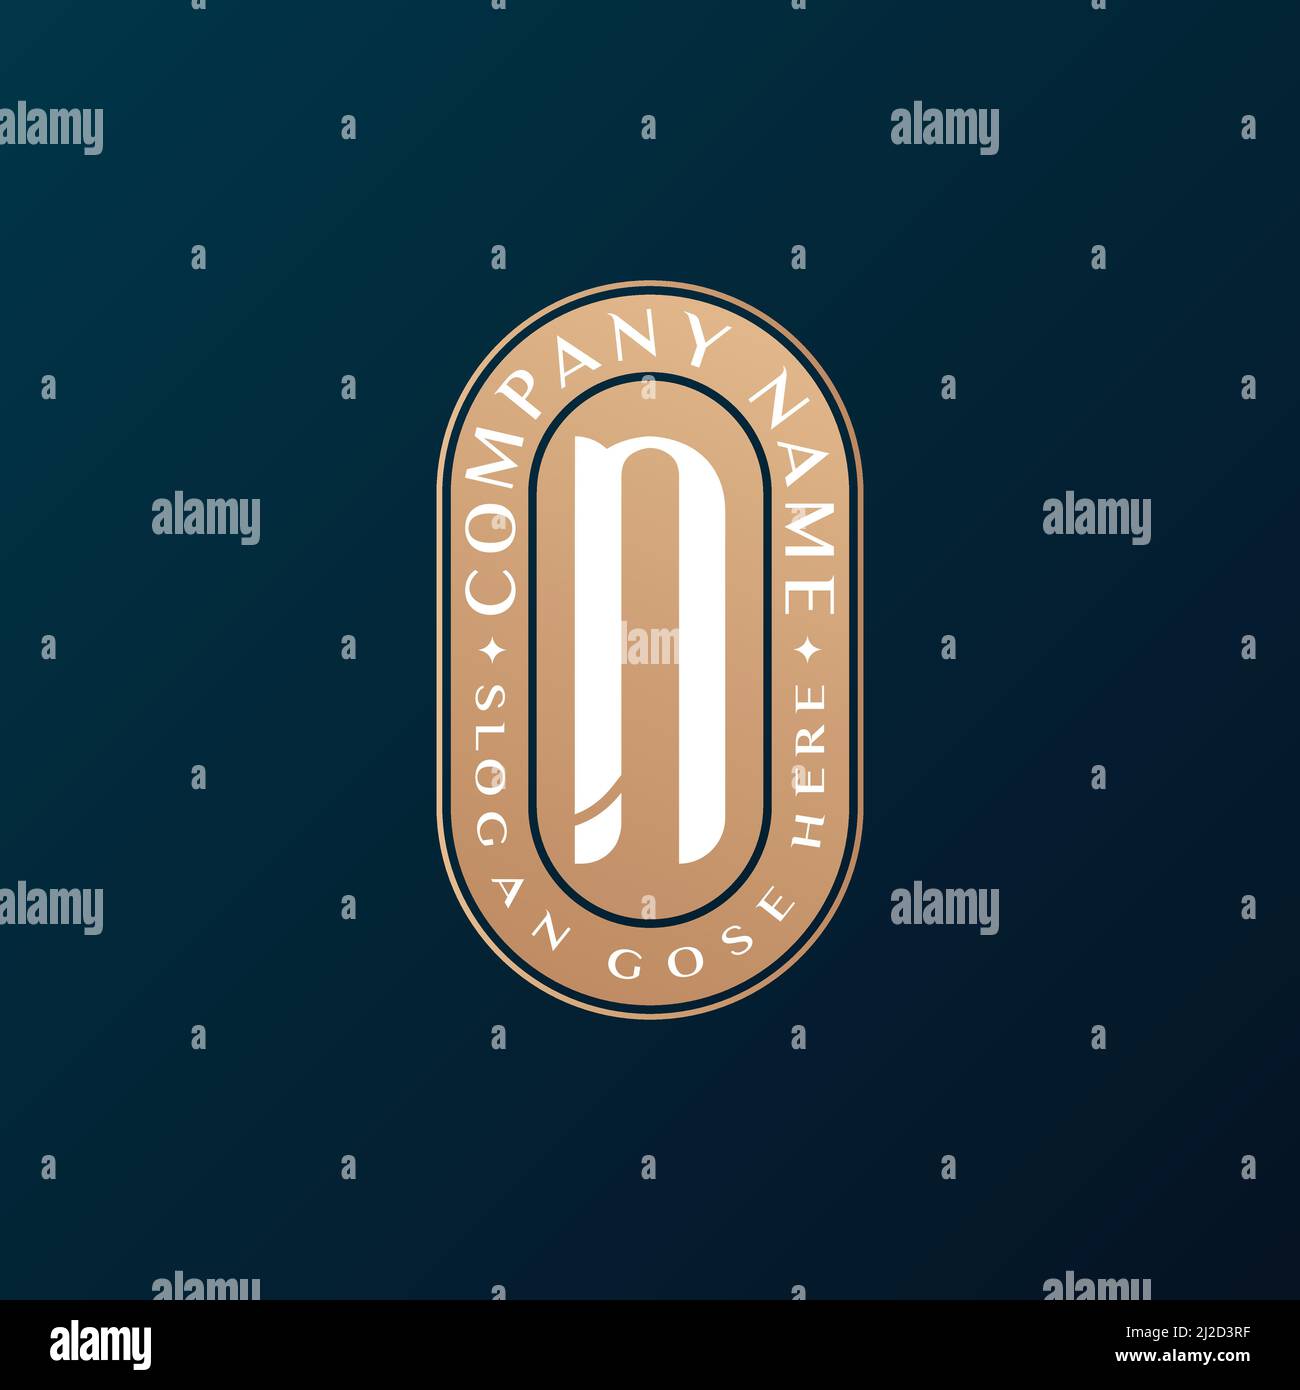 Abstrait Emblem Premium luxe identité d'entreprise élégant lettre N logo design Illustration de Vecteur